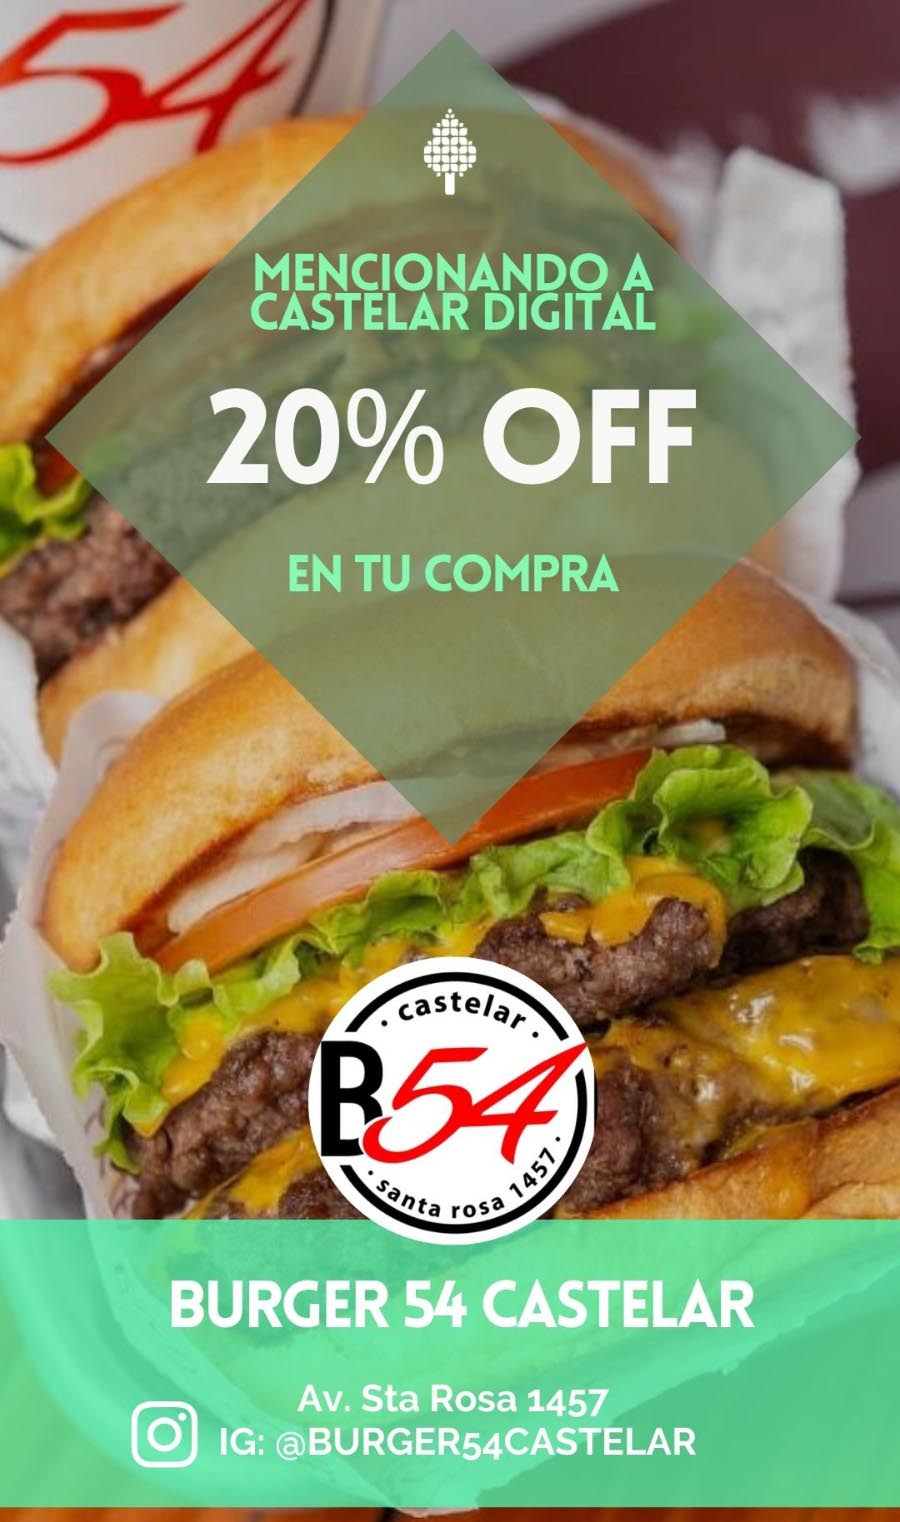 Burger 54, las mejores hamburgesas de Castelar